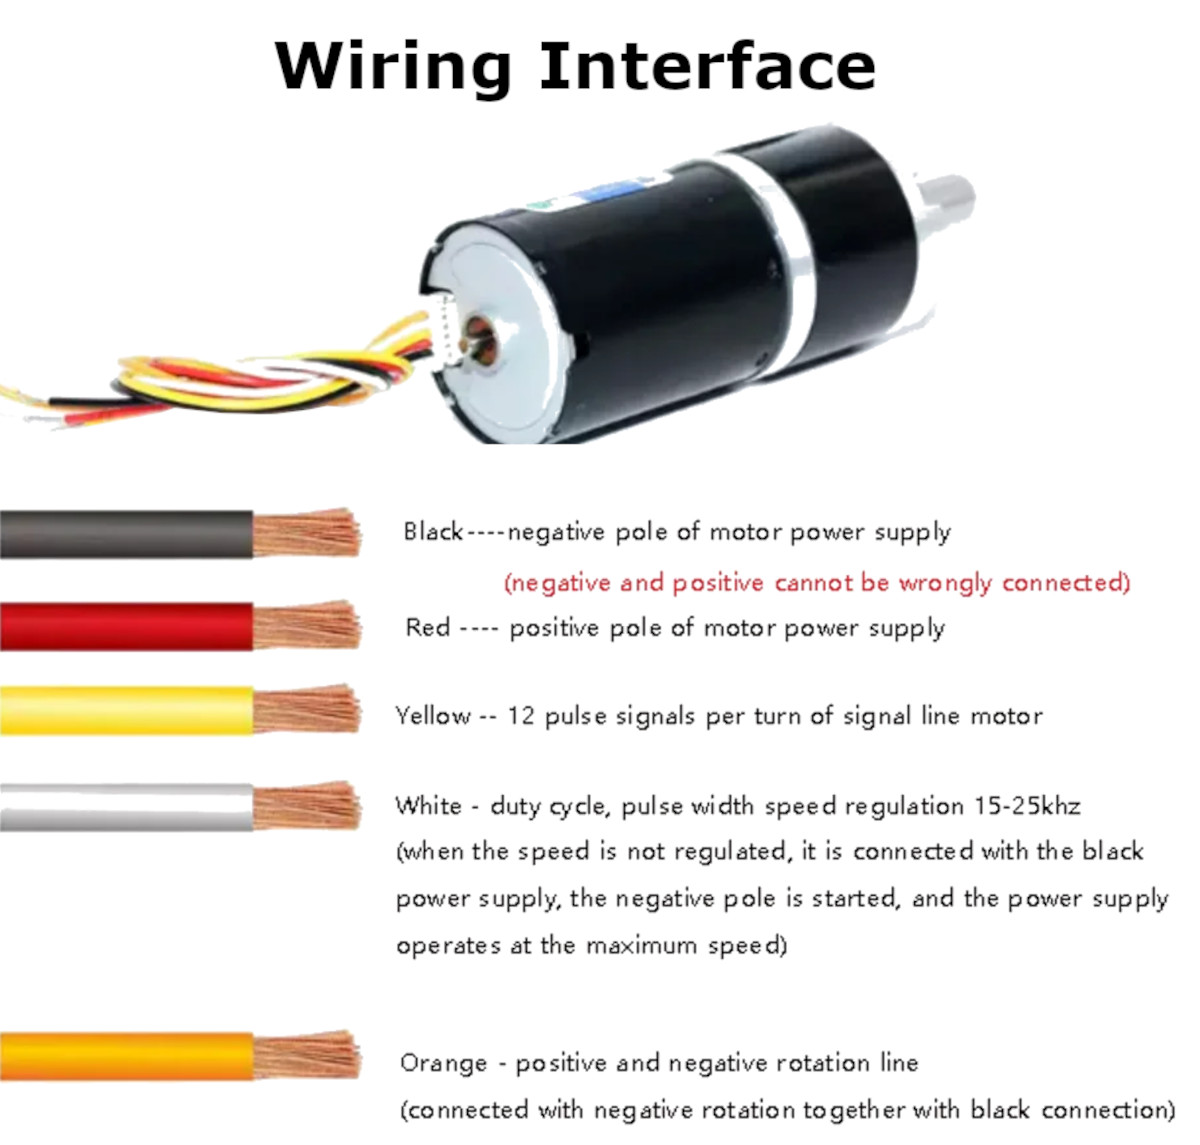 Wiring Interface